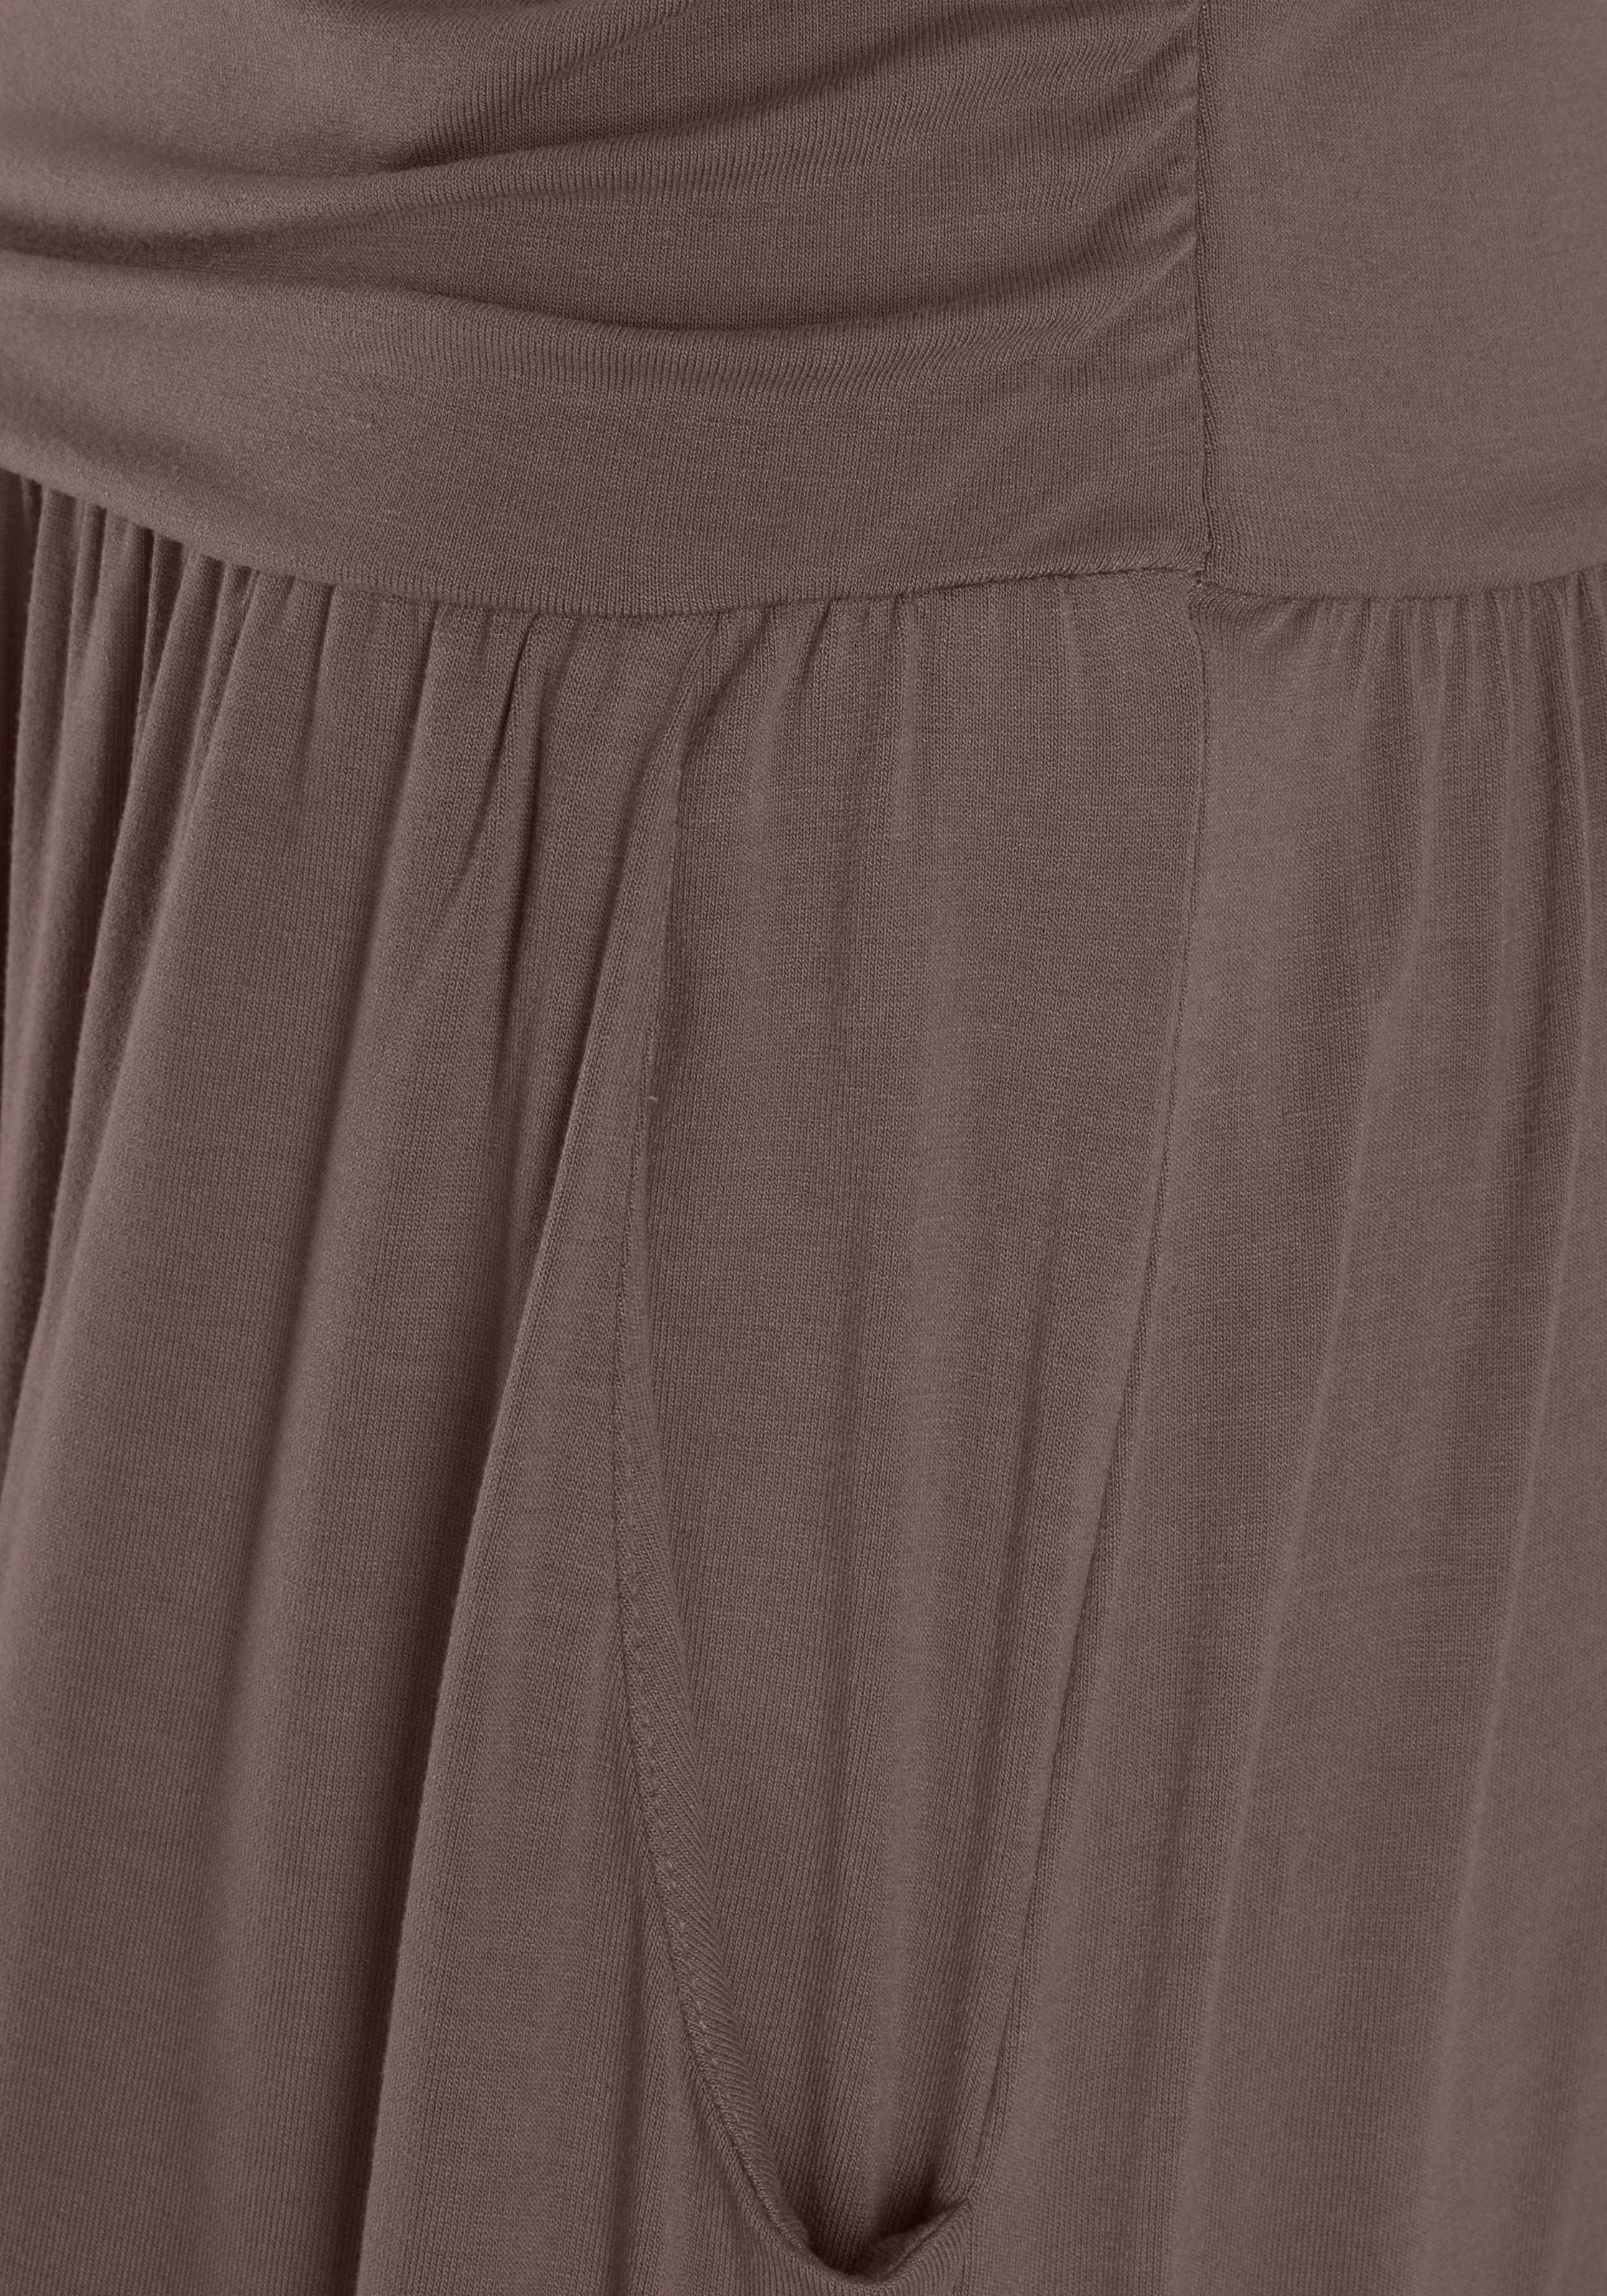 LASCANA Maxikleid, mit schmalem Oberteil und Taschen, schulterfrei, Sommerkleid, Basic